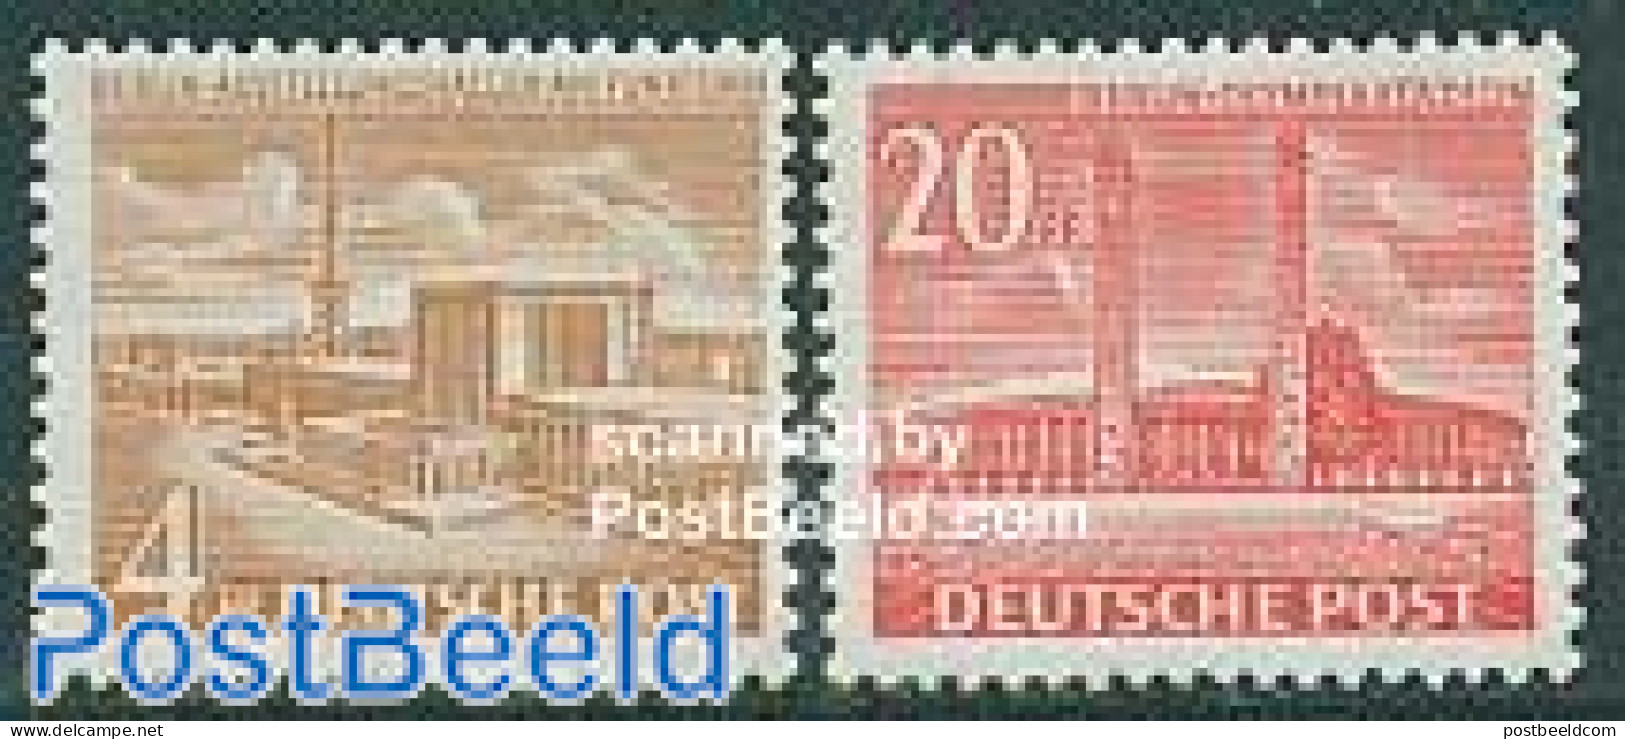 Germany, Berlin 1953 Definitives 2v, Mint NH - Ongebruikt